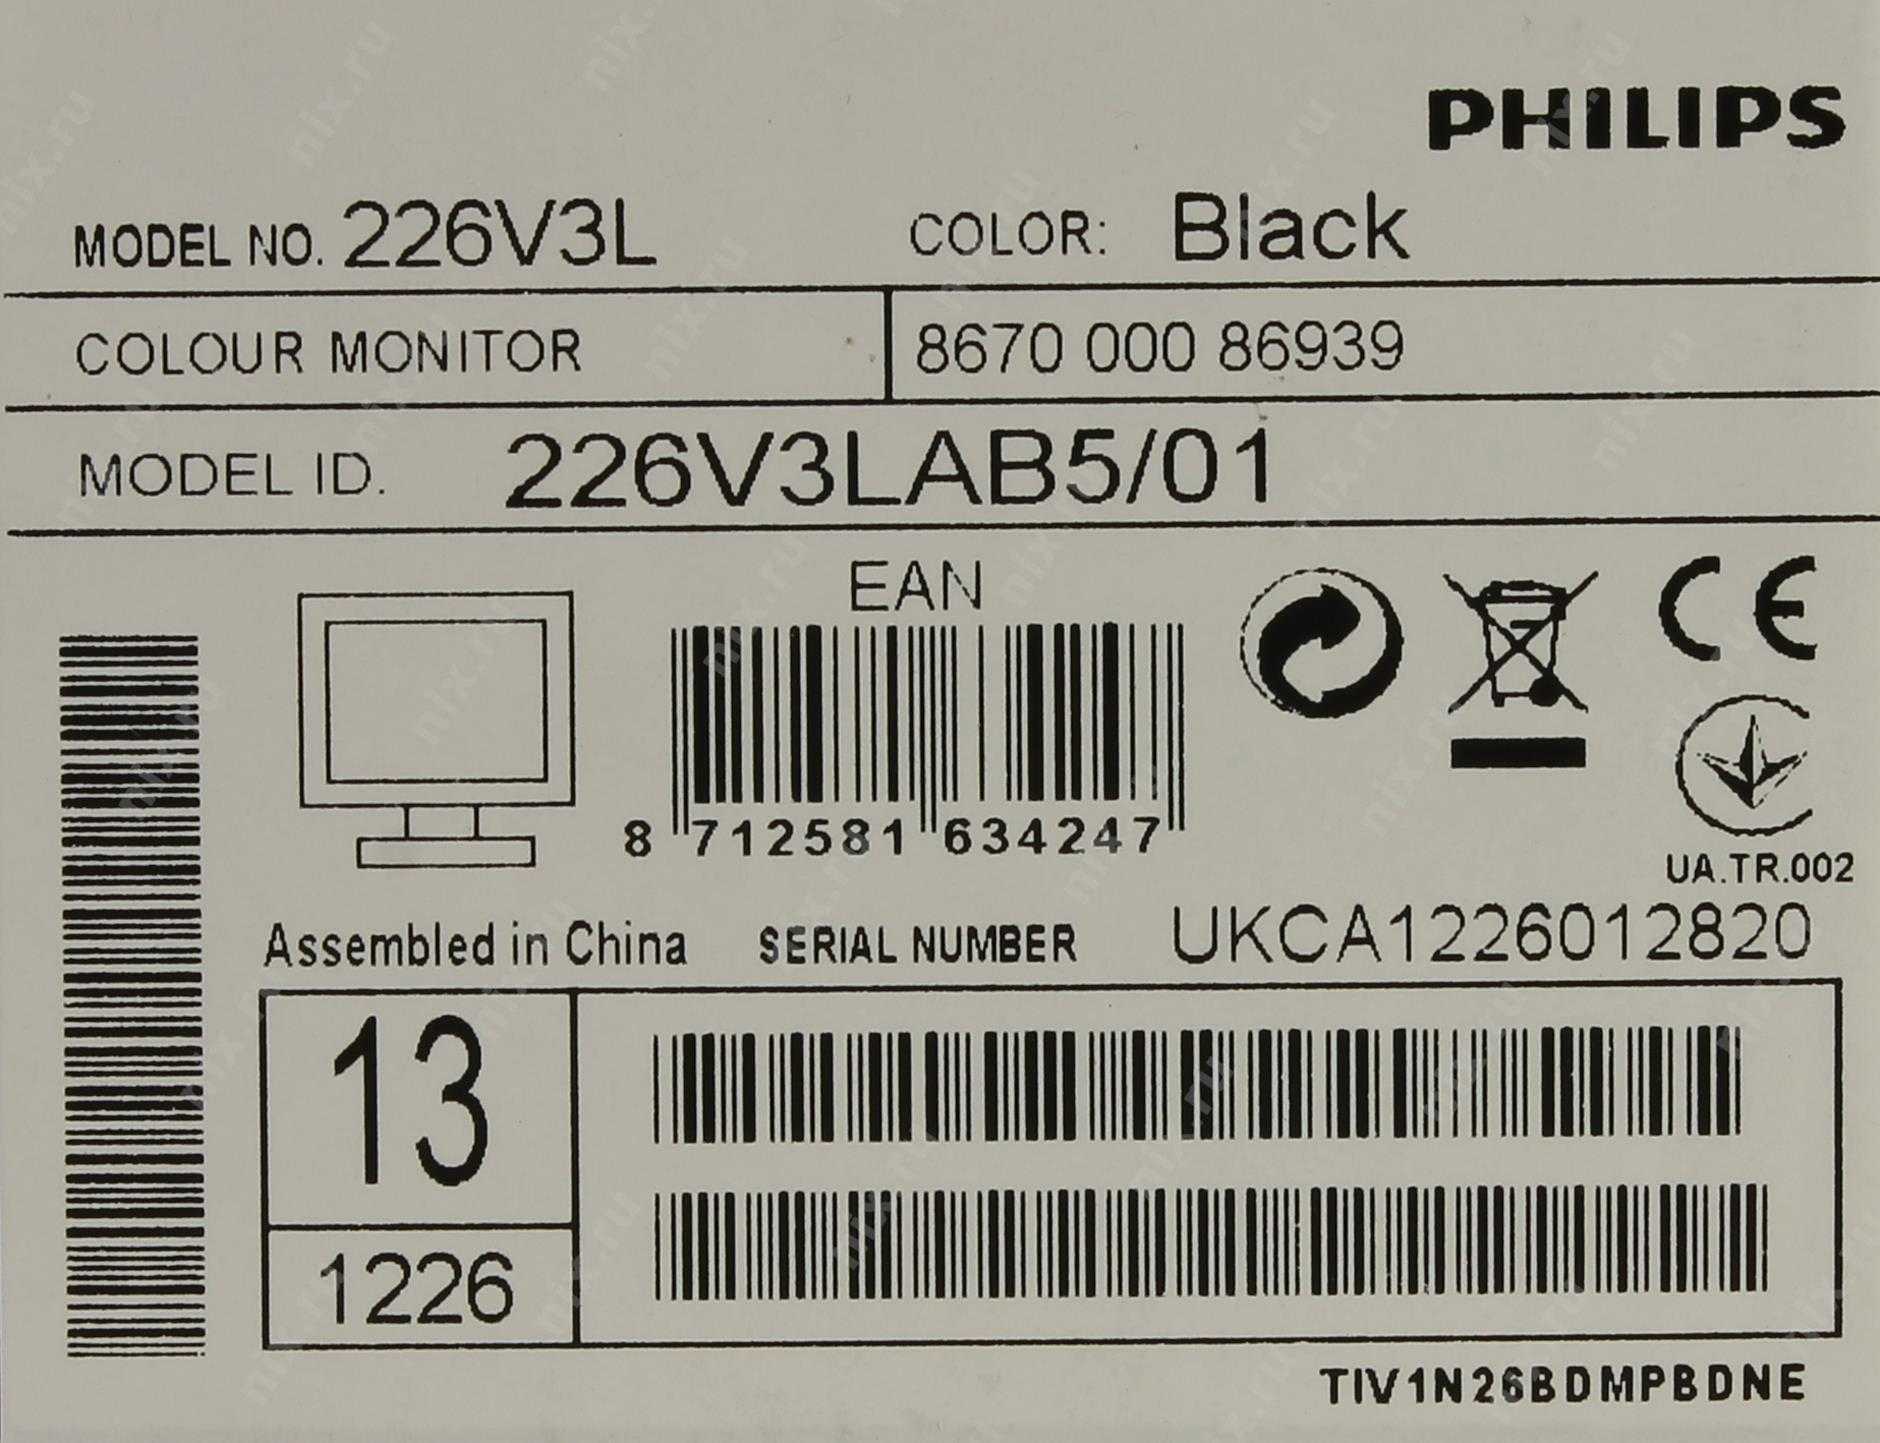 Жк монитор 21.5" philips 226v4l — купить, цена и характеристики, отзывы